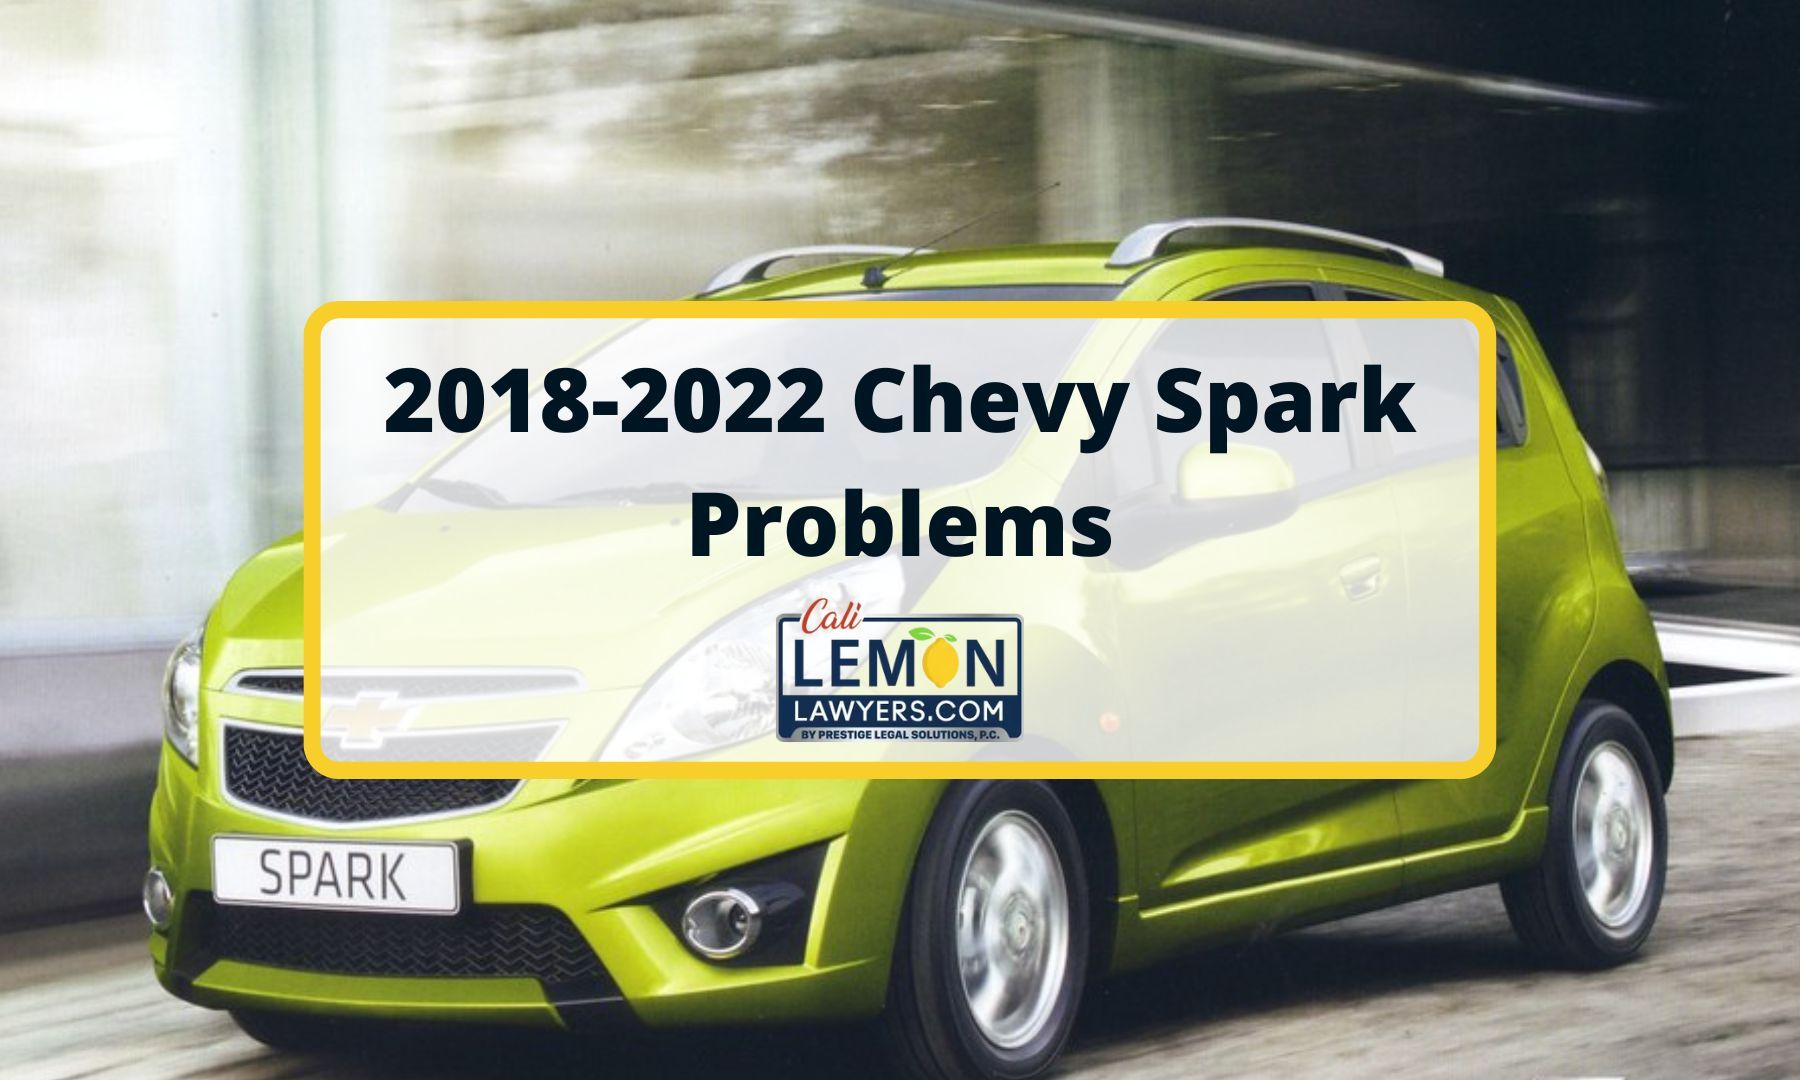 2018-2022 Chevy Spark Problems